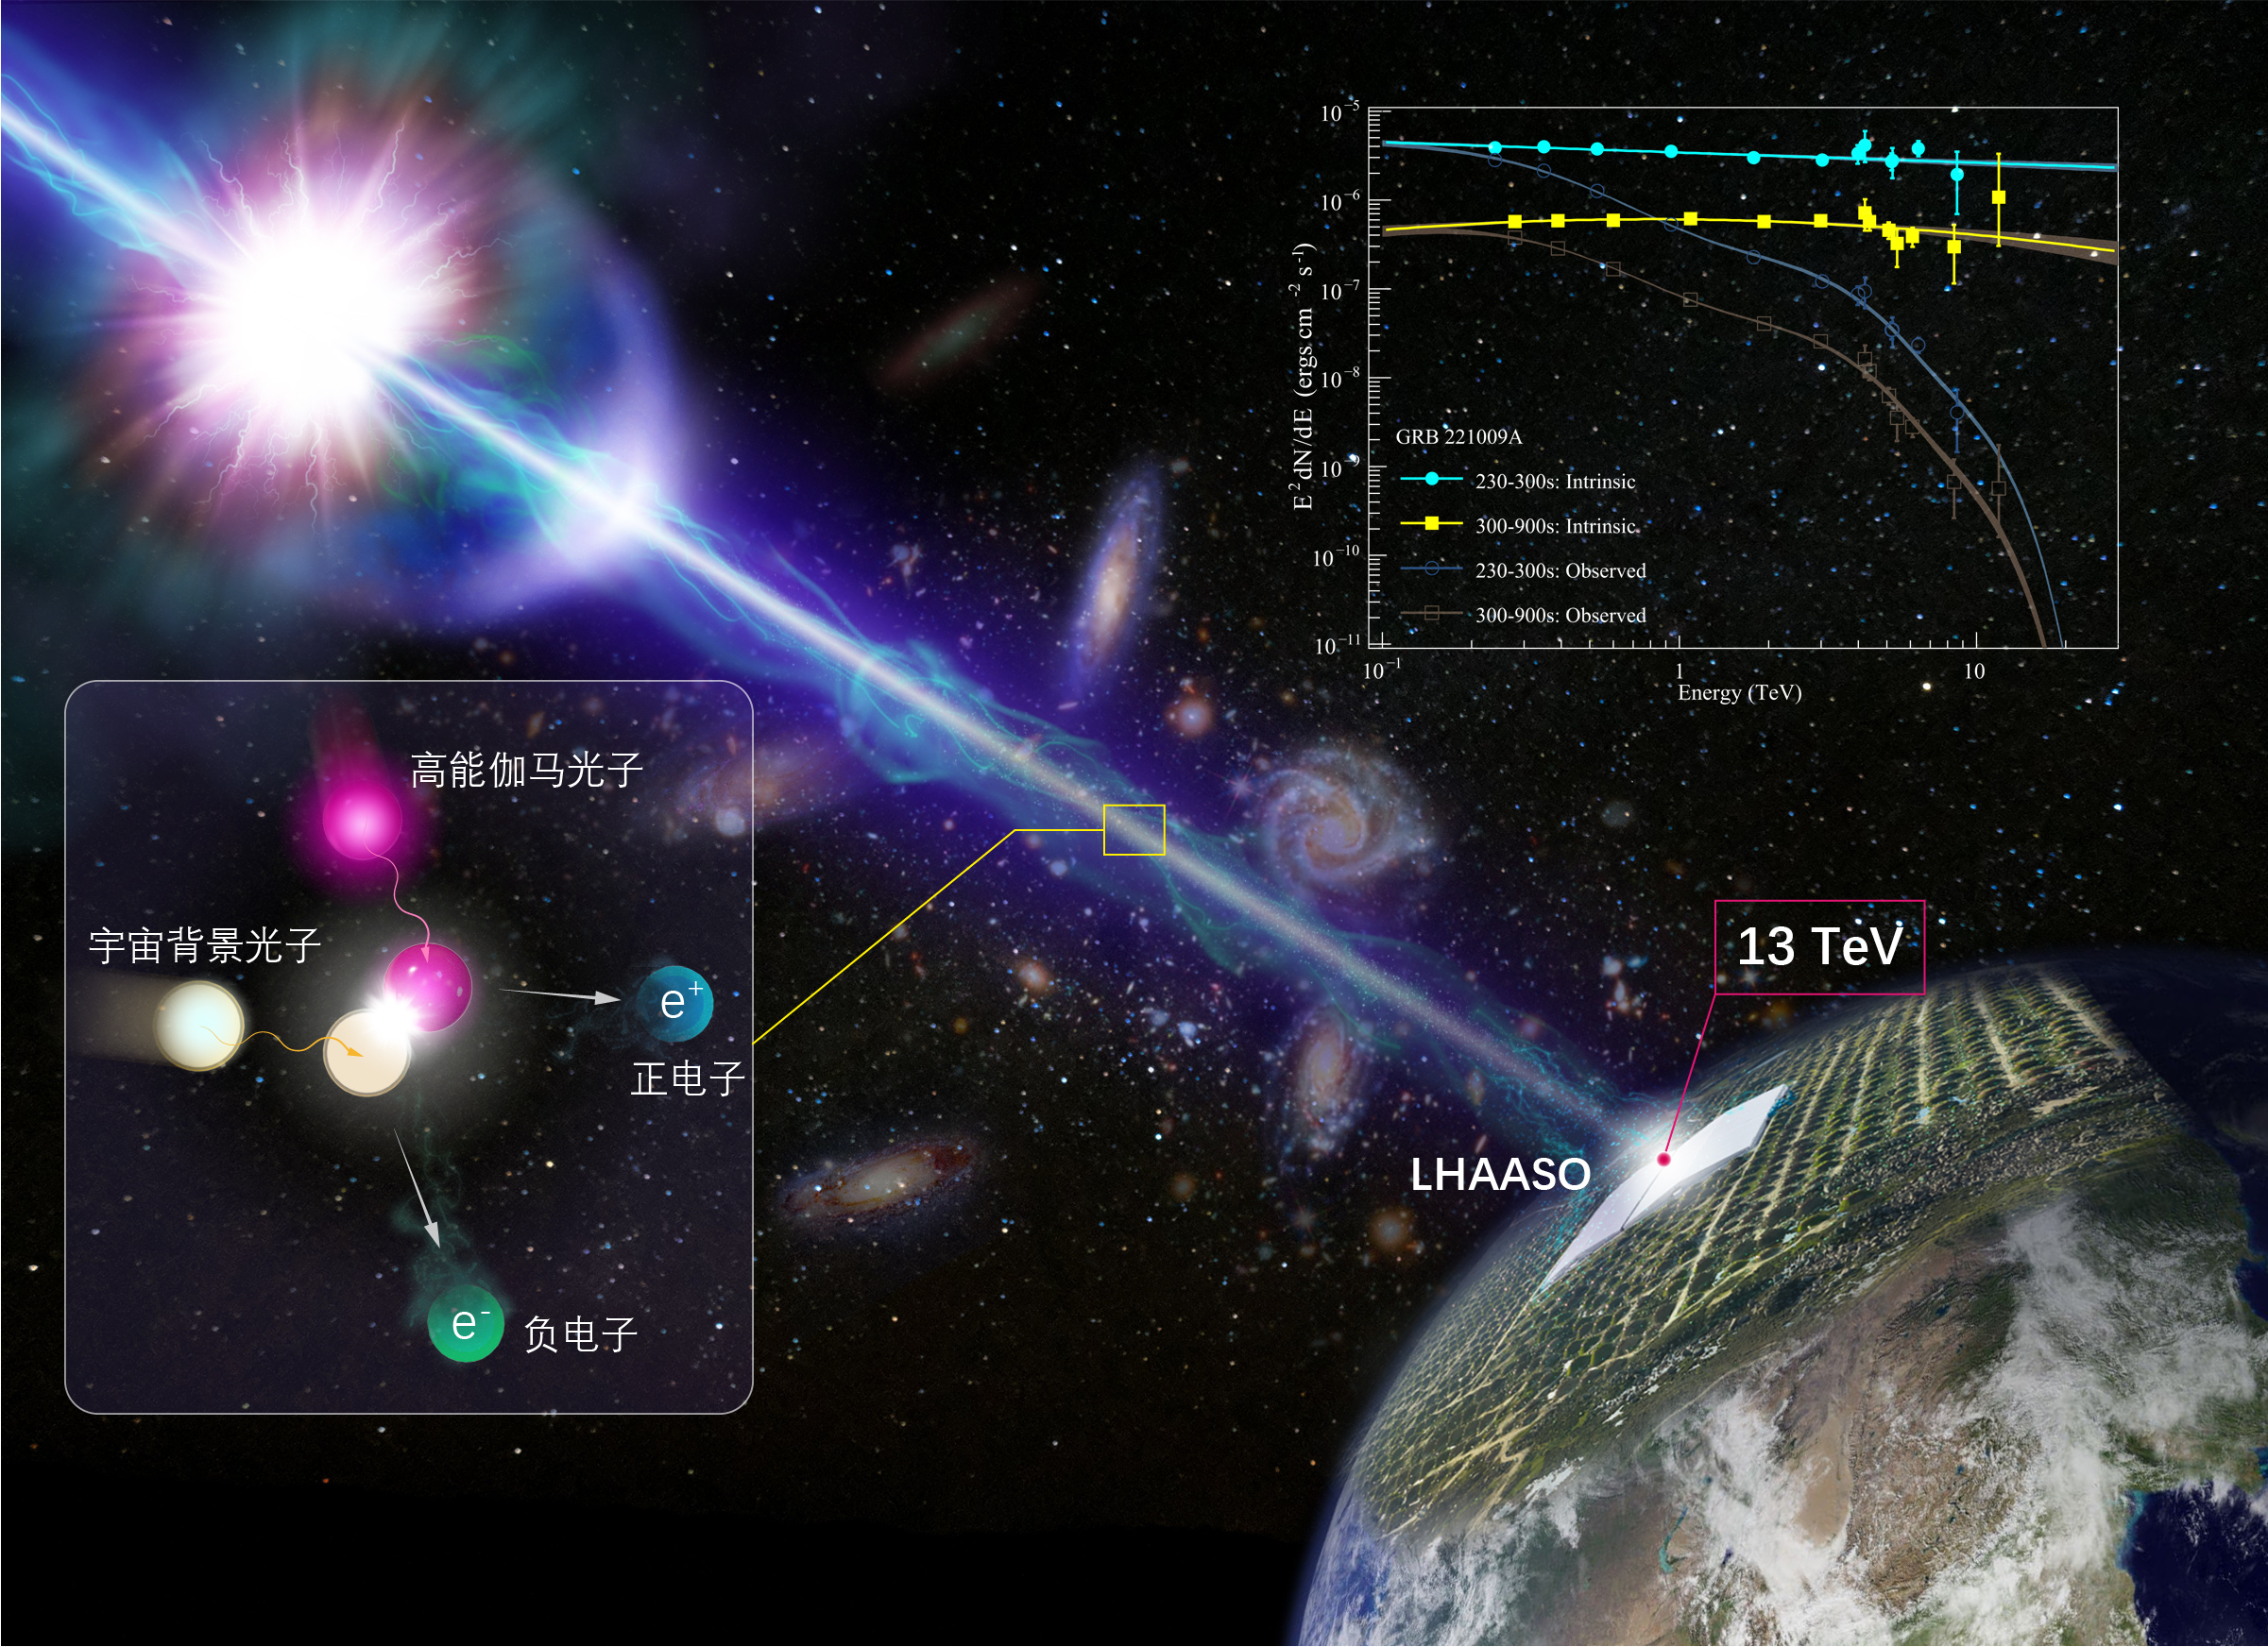 “拉索”精确测量迄今最亮伽马射线暴高能辐射能谱